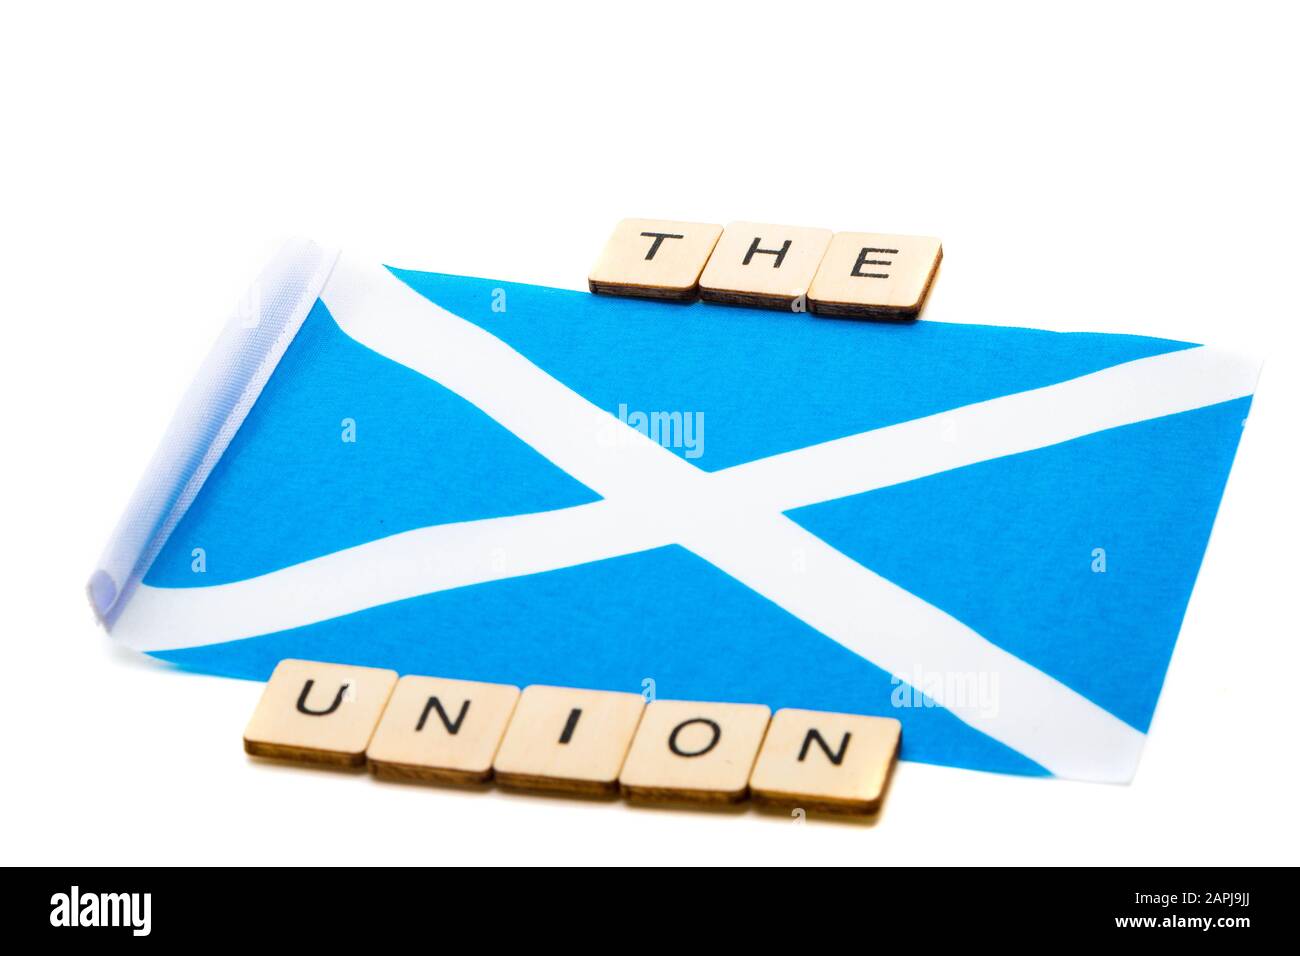 Die Nationalflaggen Schottlands, der Saltaire oder das Kreuz von St Andrews auf weißem Hintergrund mit einem Schild, das die Union liest Stockfoto